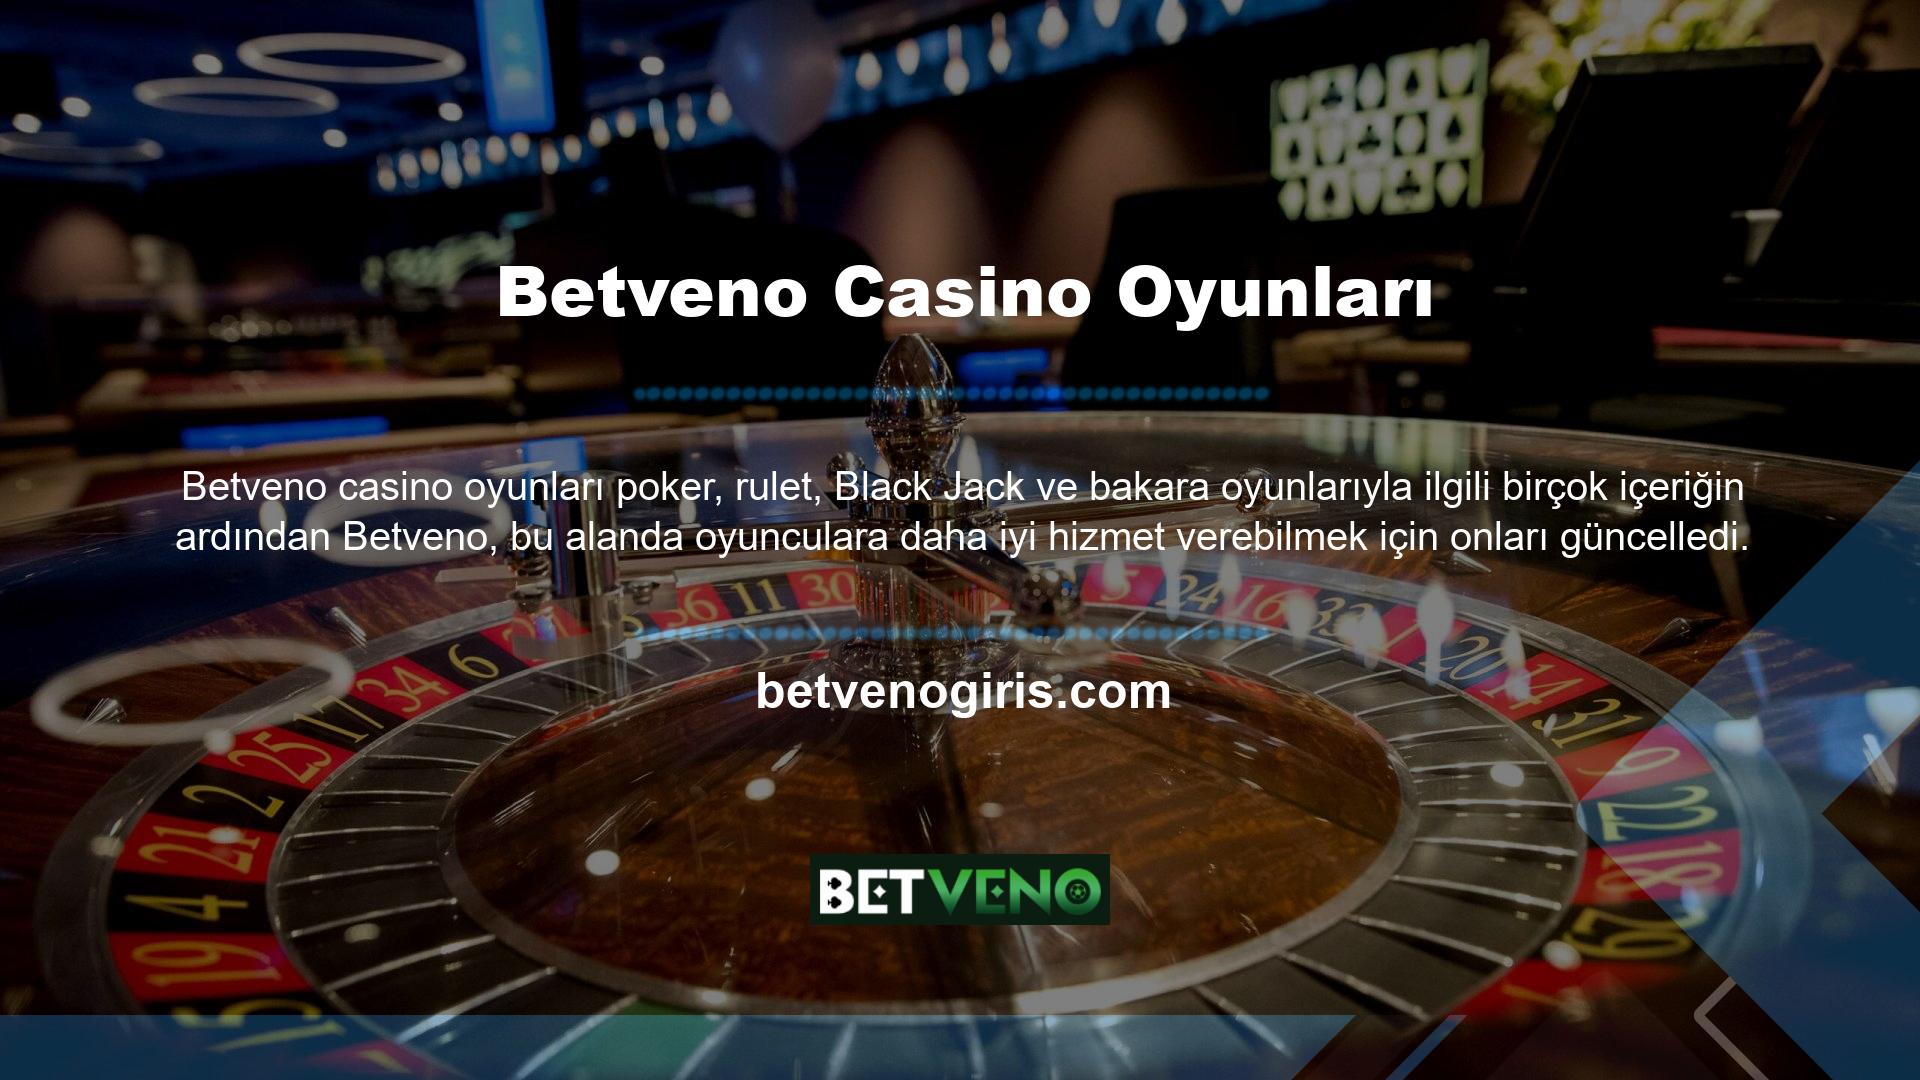 Betveno canlı casino, bu konuda faydalı oyunların yanı sıra düzenli ve düzenli güncellemeler sunar